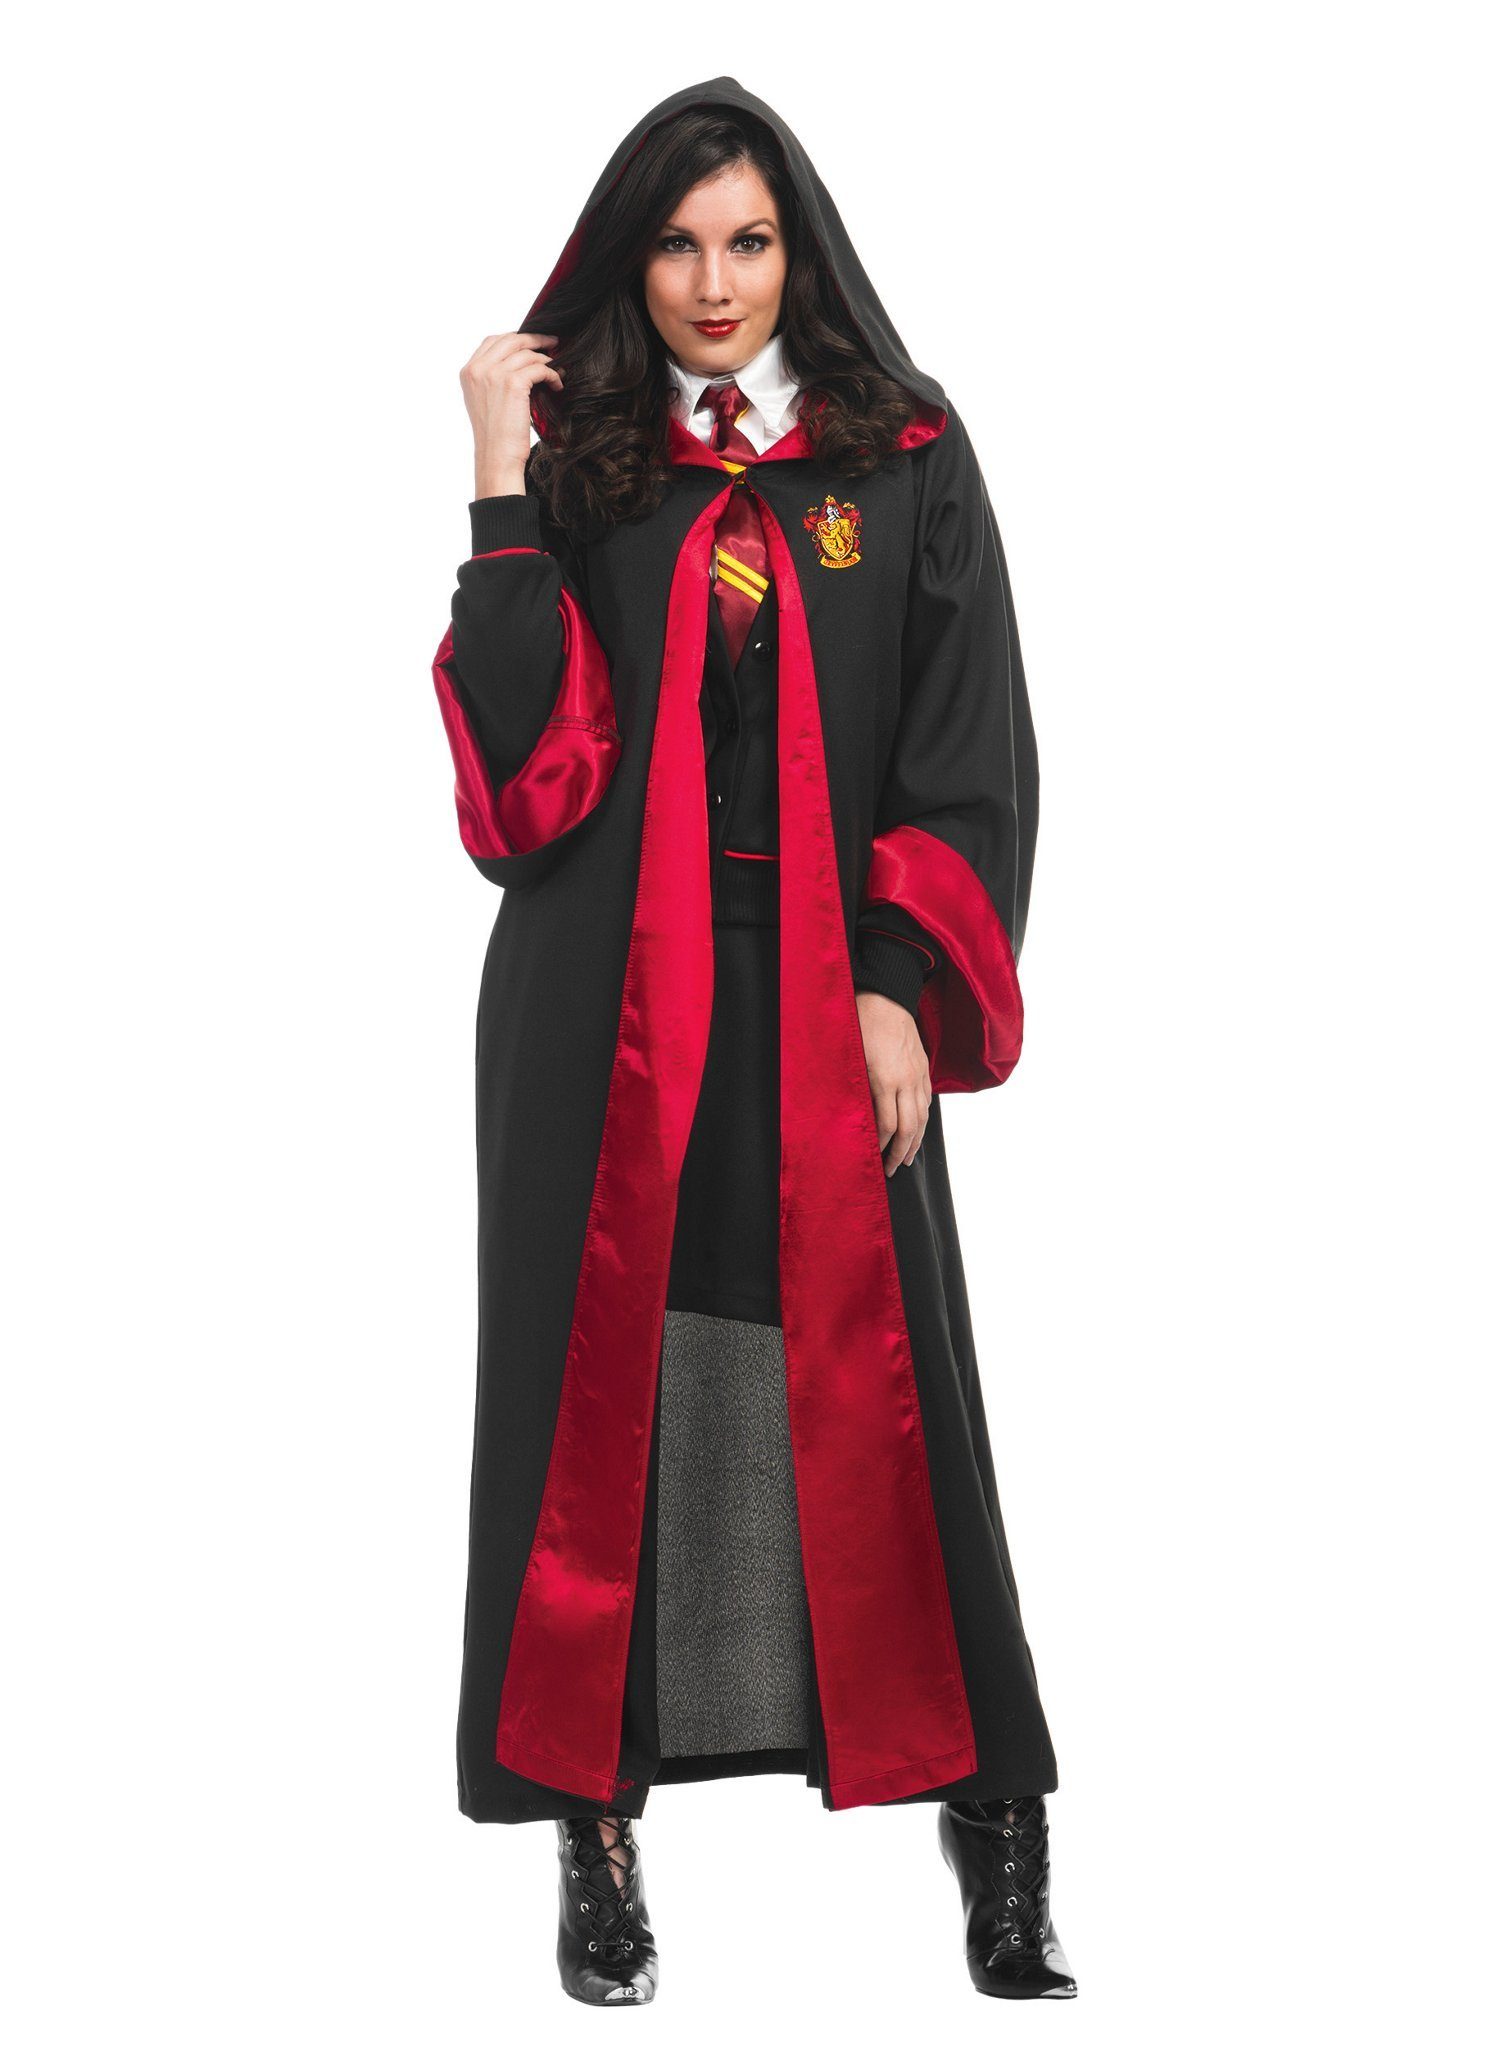 Charades Kostüm Hermine Granger Premium, Hochwertiges Cosplay-Kostüm für Harry Potters Freundin